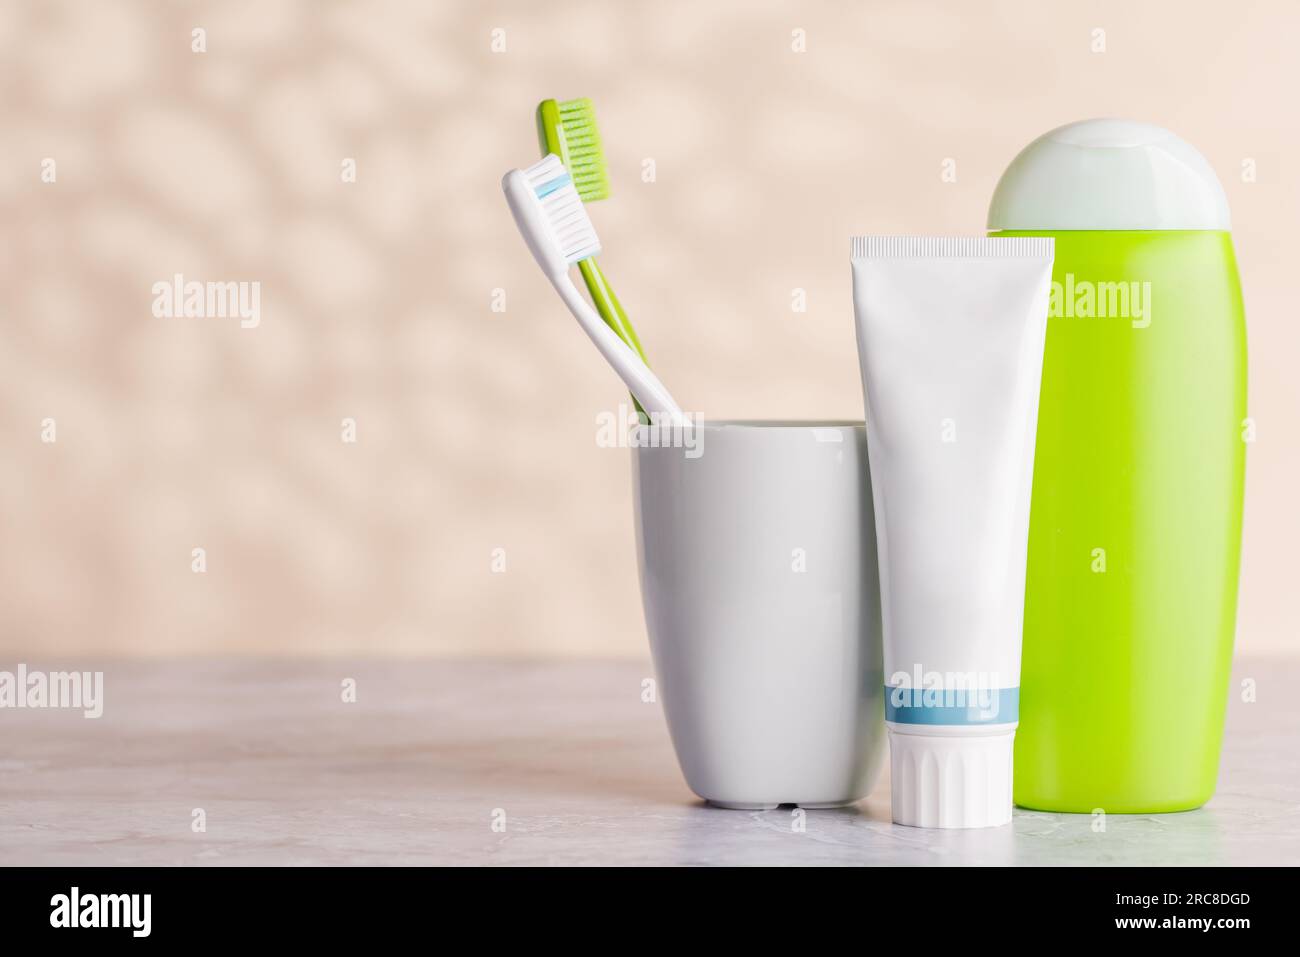 Un'immagine pulita e rinfrescante con tubi da bagno e spazzolini da denti, che favoriscono l'igiene orale e uno stile di vita sano Foto Stock